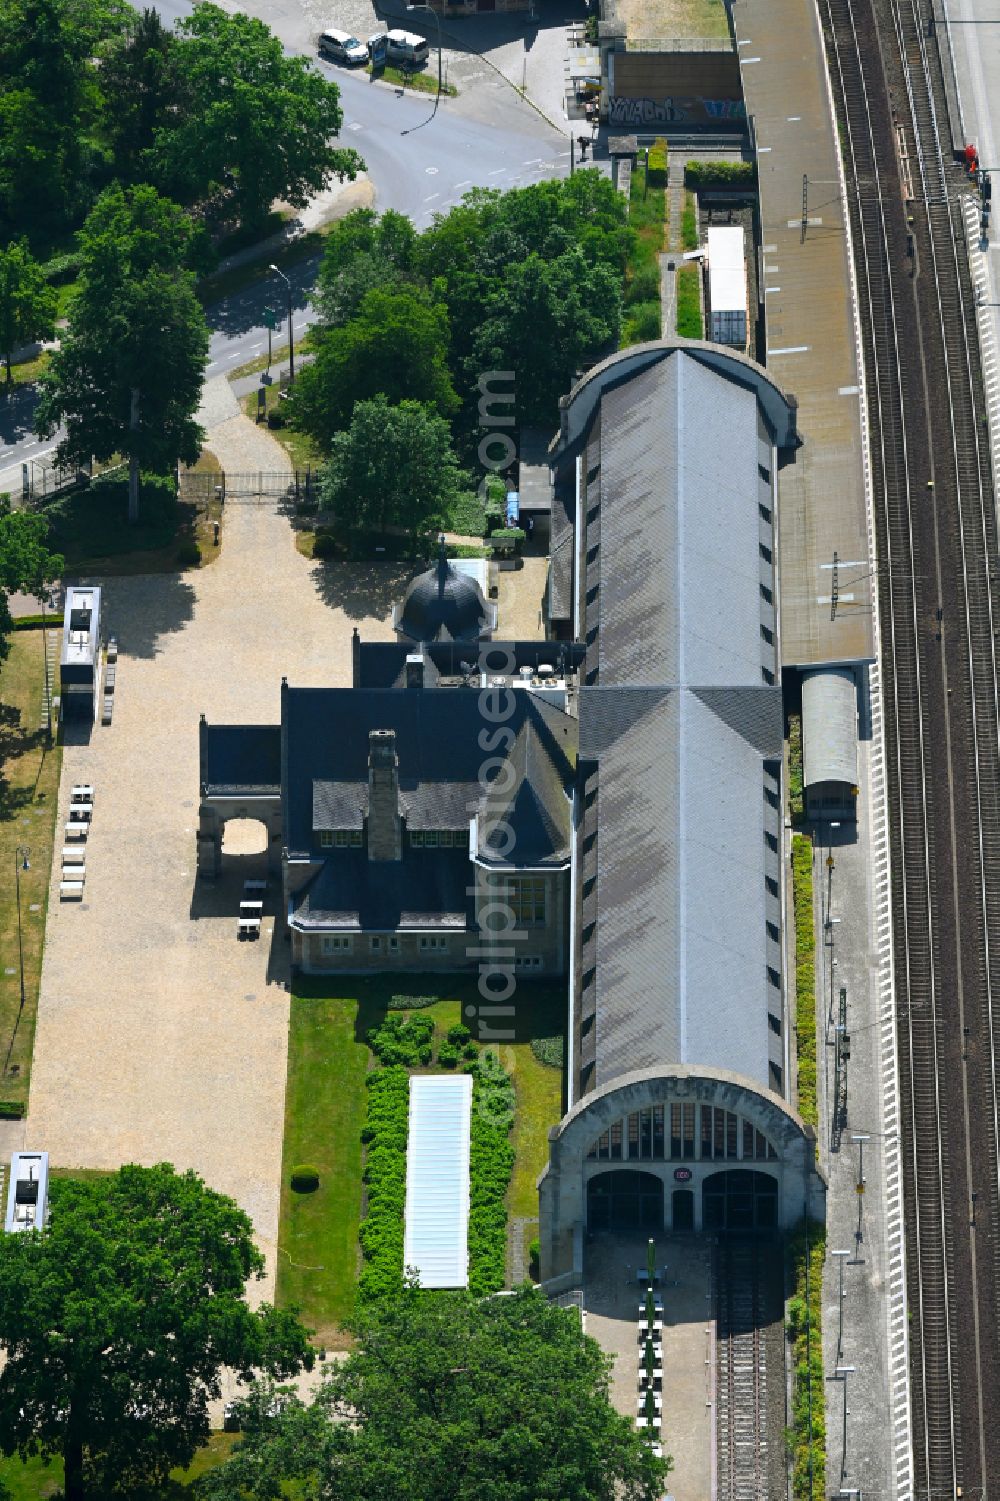 Aerial photograph Potsdam - Station railway building of the Deutsche Bahn in the district Westliche Vorstadt in Potsdam in the state Brandenburg, Germany